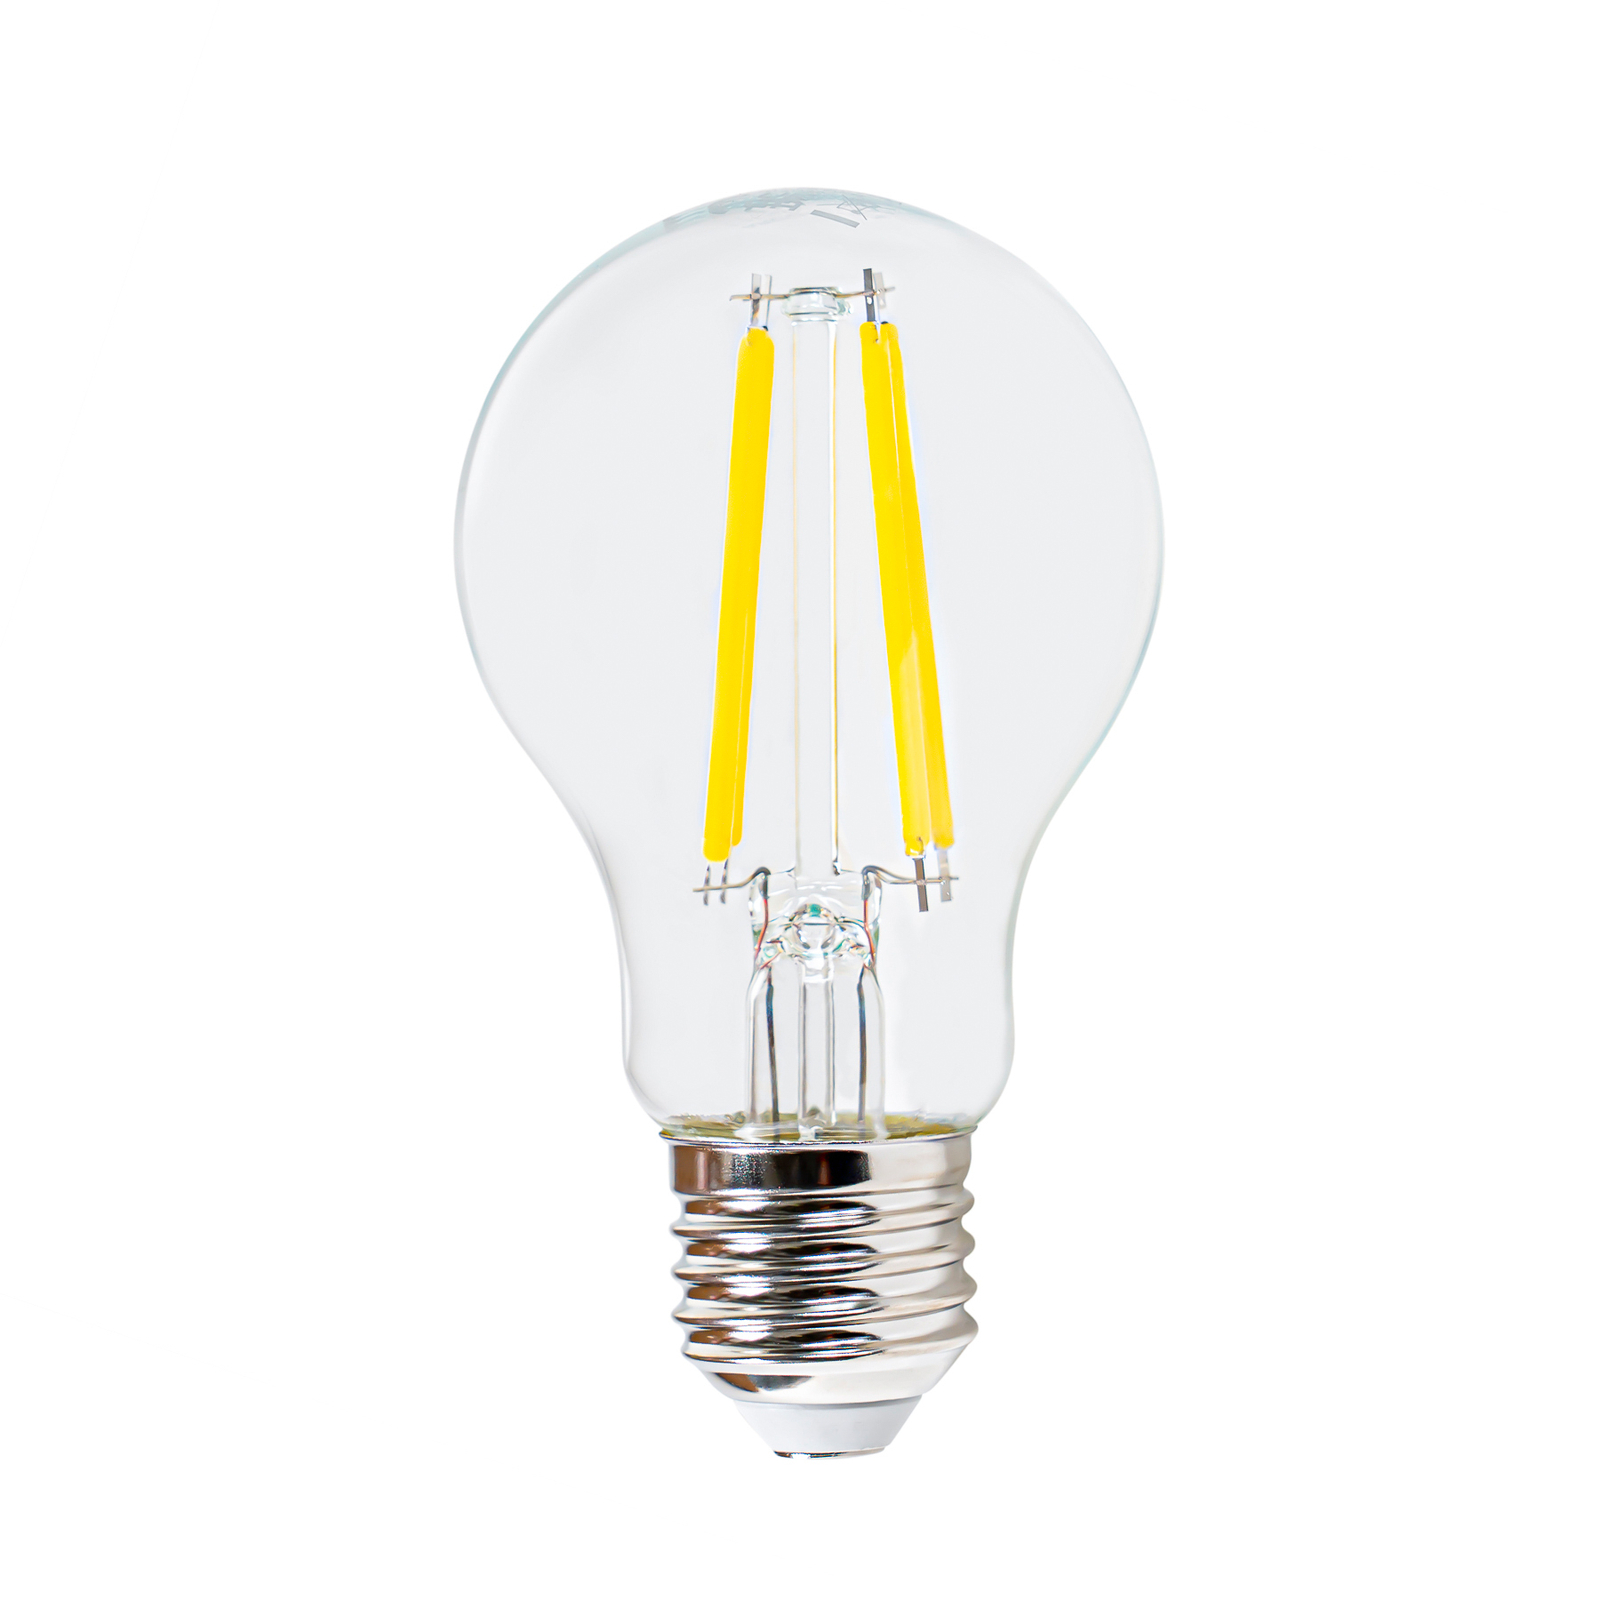 LED filament lamp E27 5W 3.000K, 1060 lumen, helder